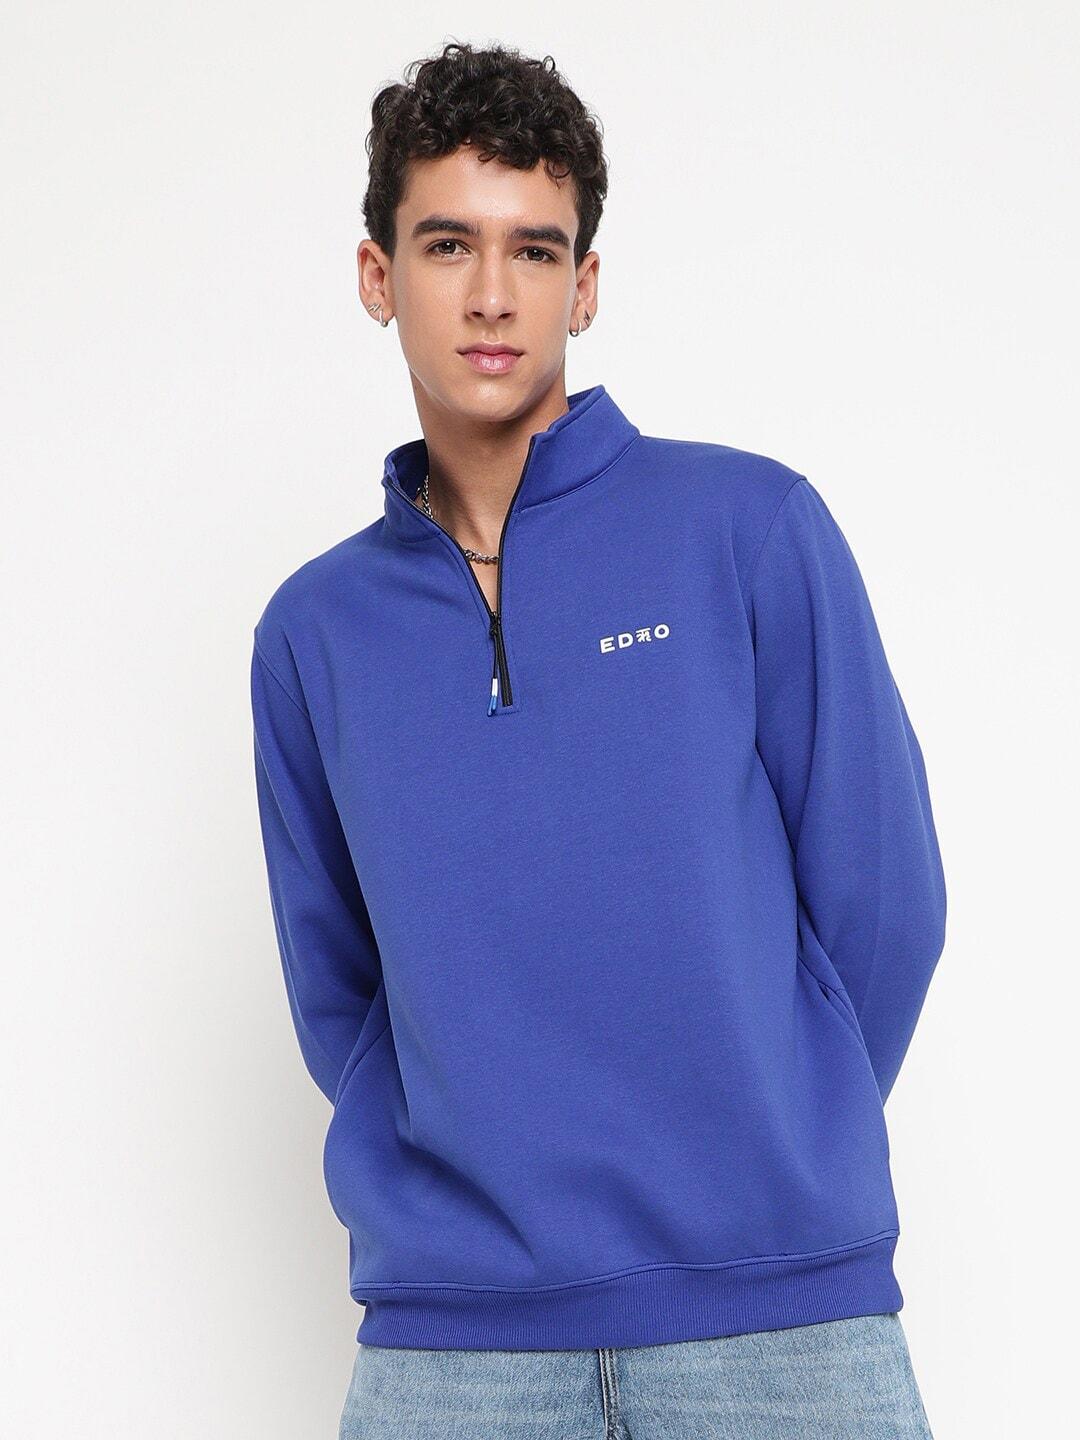 edrio-mock-collar-long-sleeve-zip-detail-woollen-pullover-sweatshirt